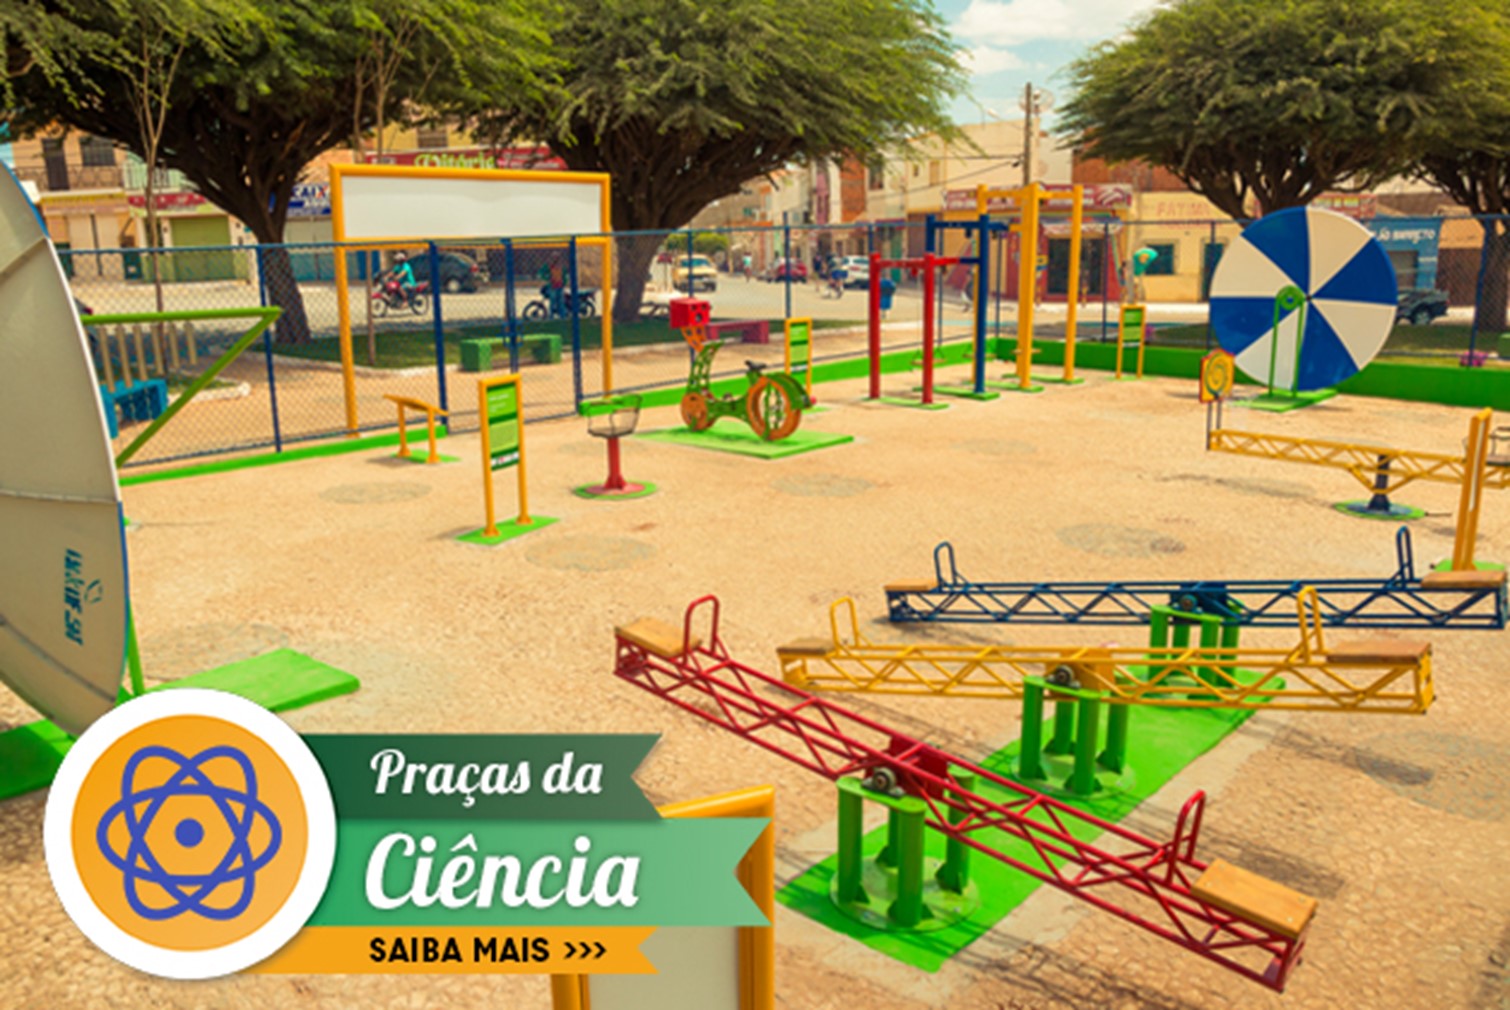 Imagem gerada por computador mostrando o projeto da praça, com diversos brinquedos coloridos sobre um piso de areia. 